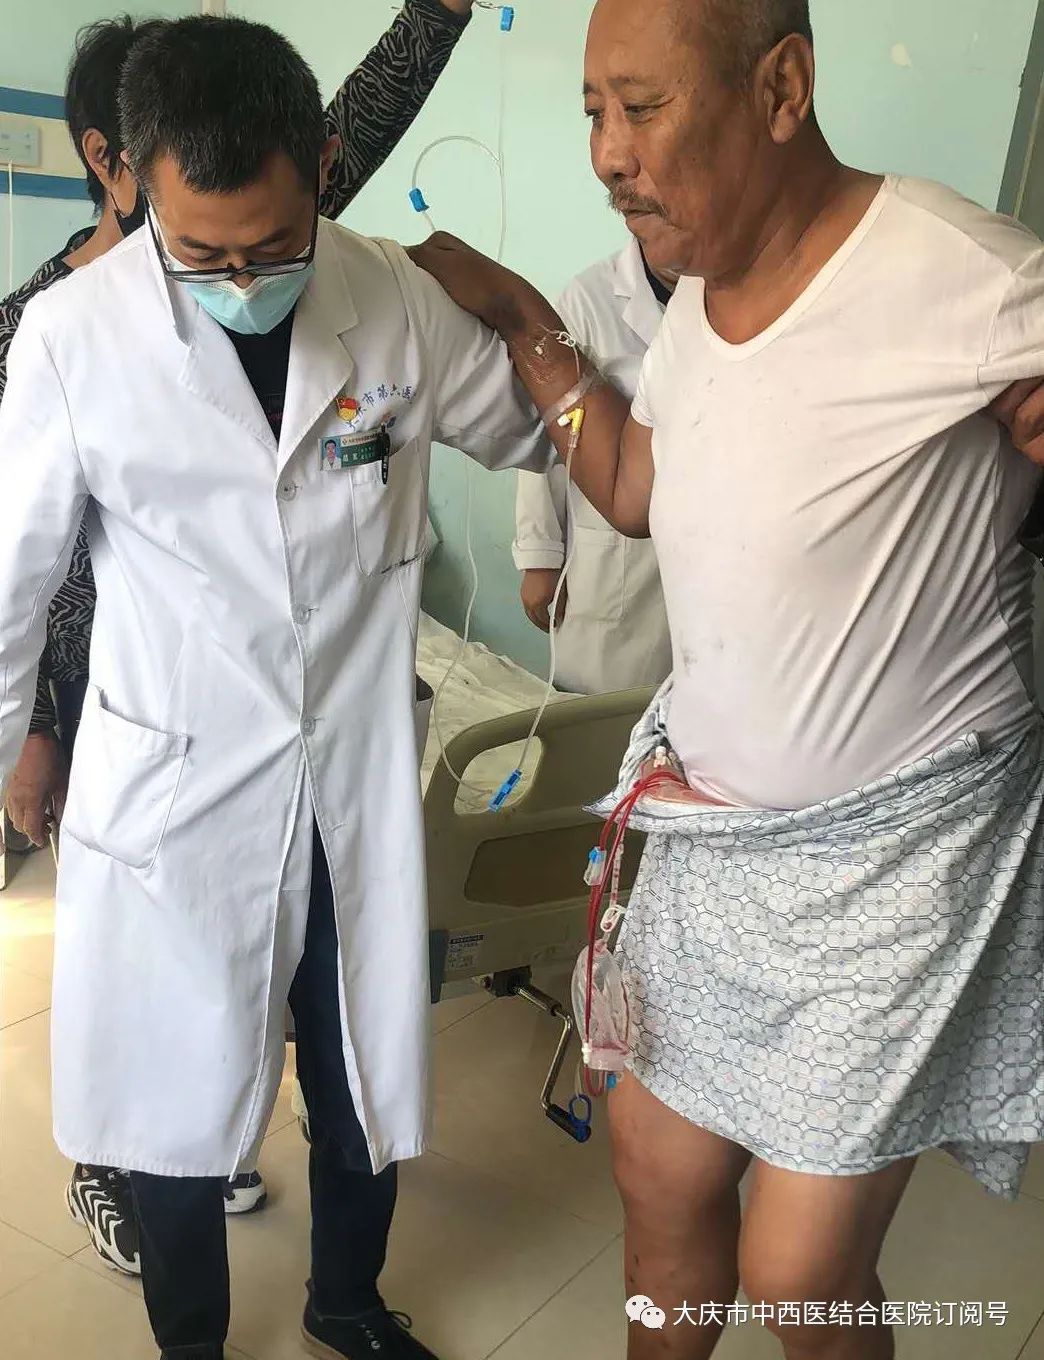 大庆市中西医结合医院成功为59岁老人进行人工髋关节置换手术